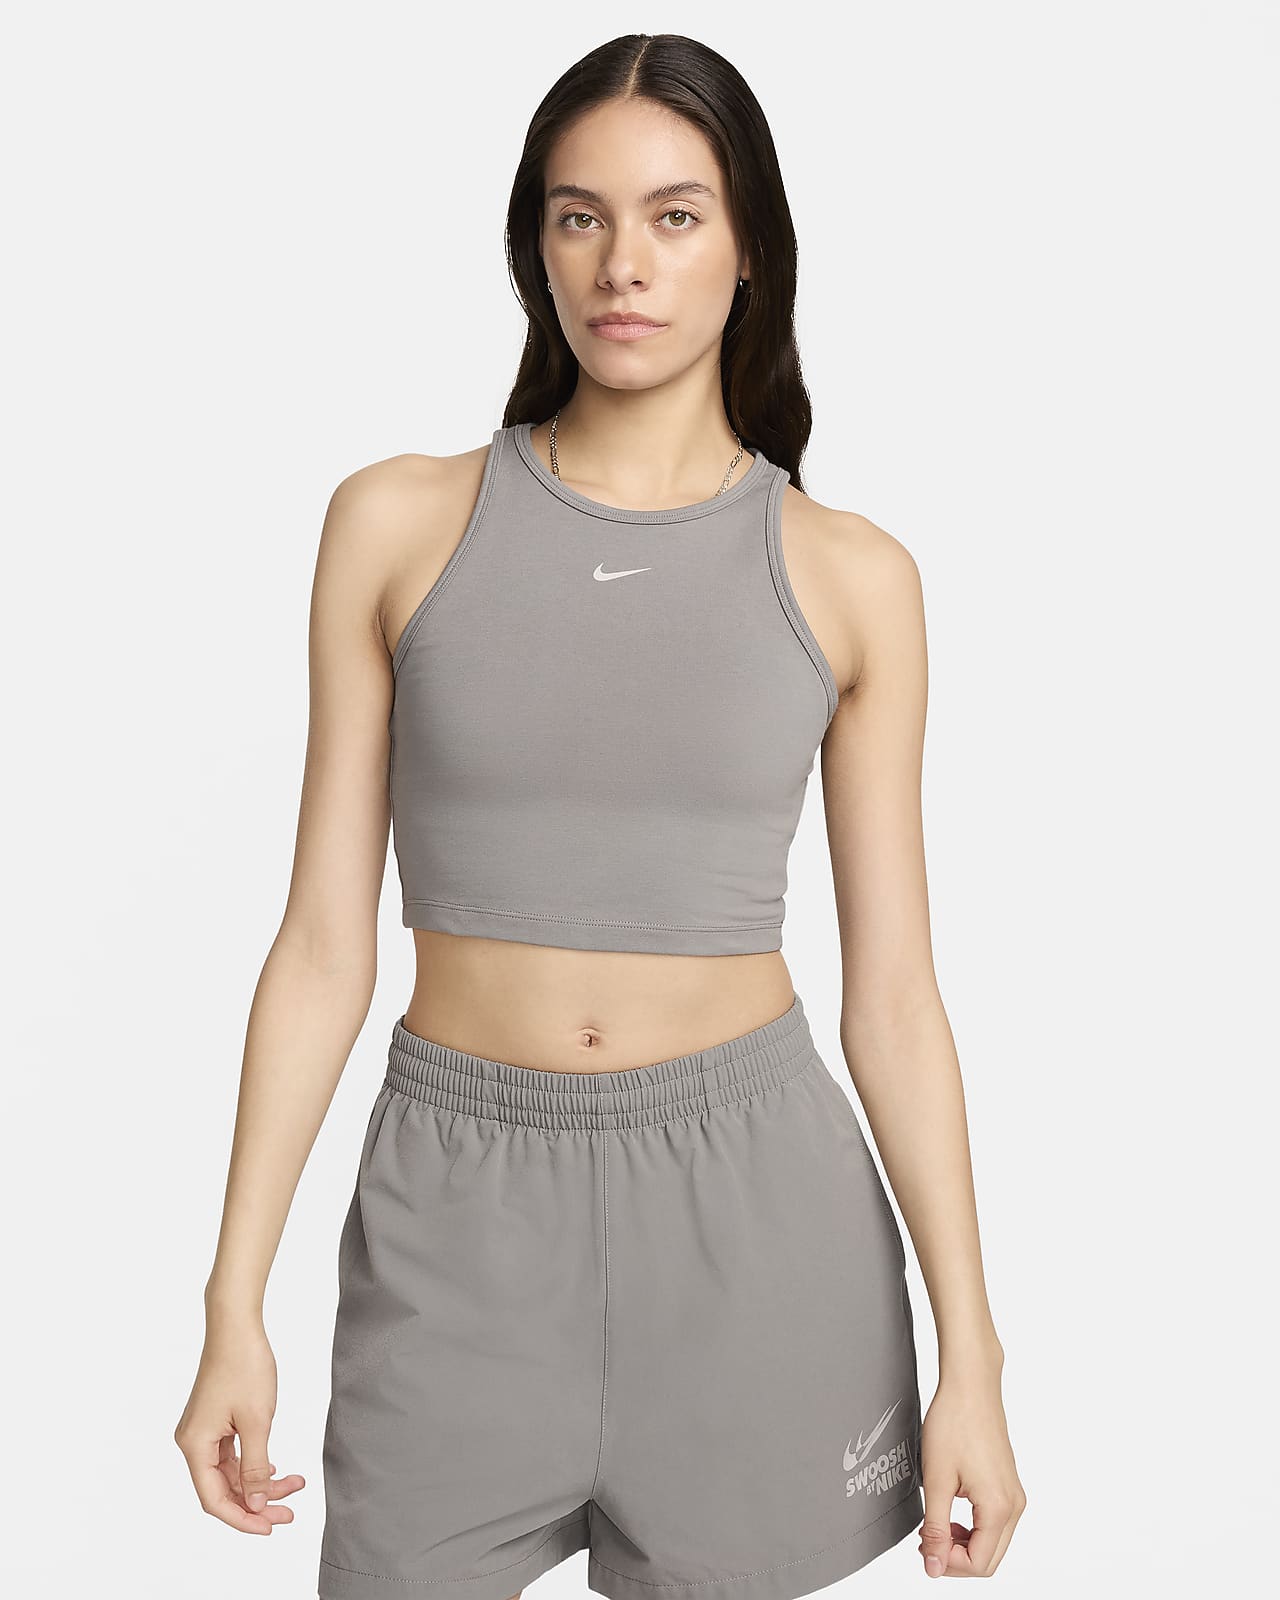 Canotta Nike Sportswear - Donna